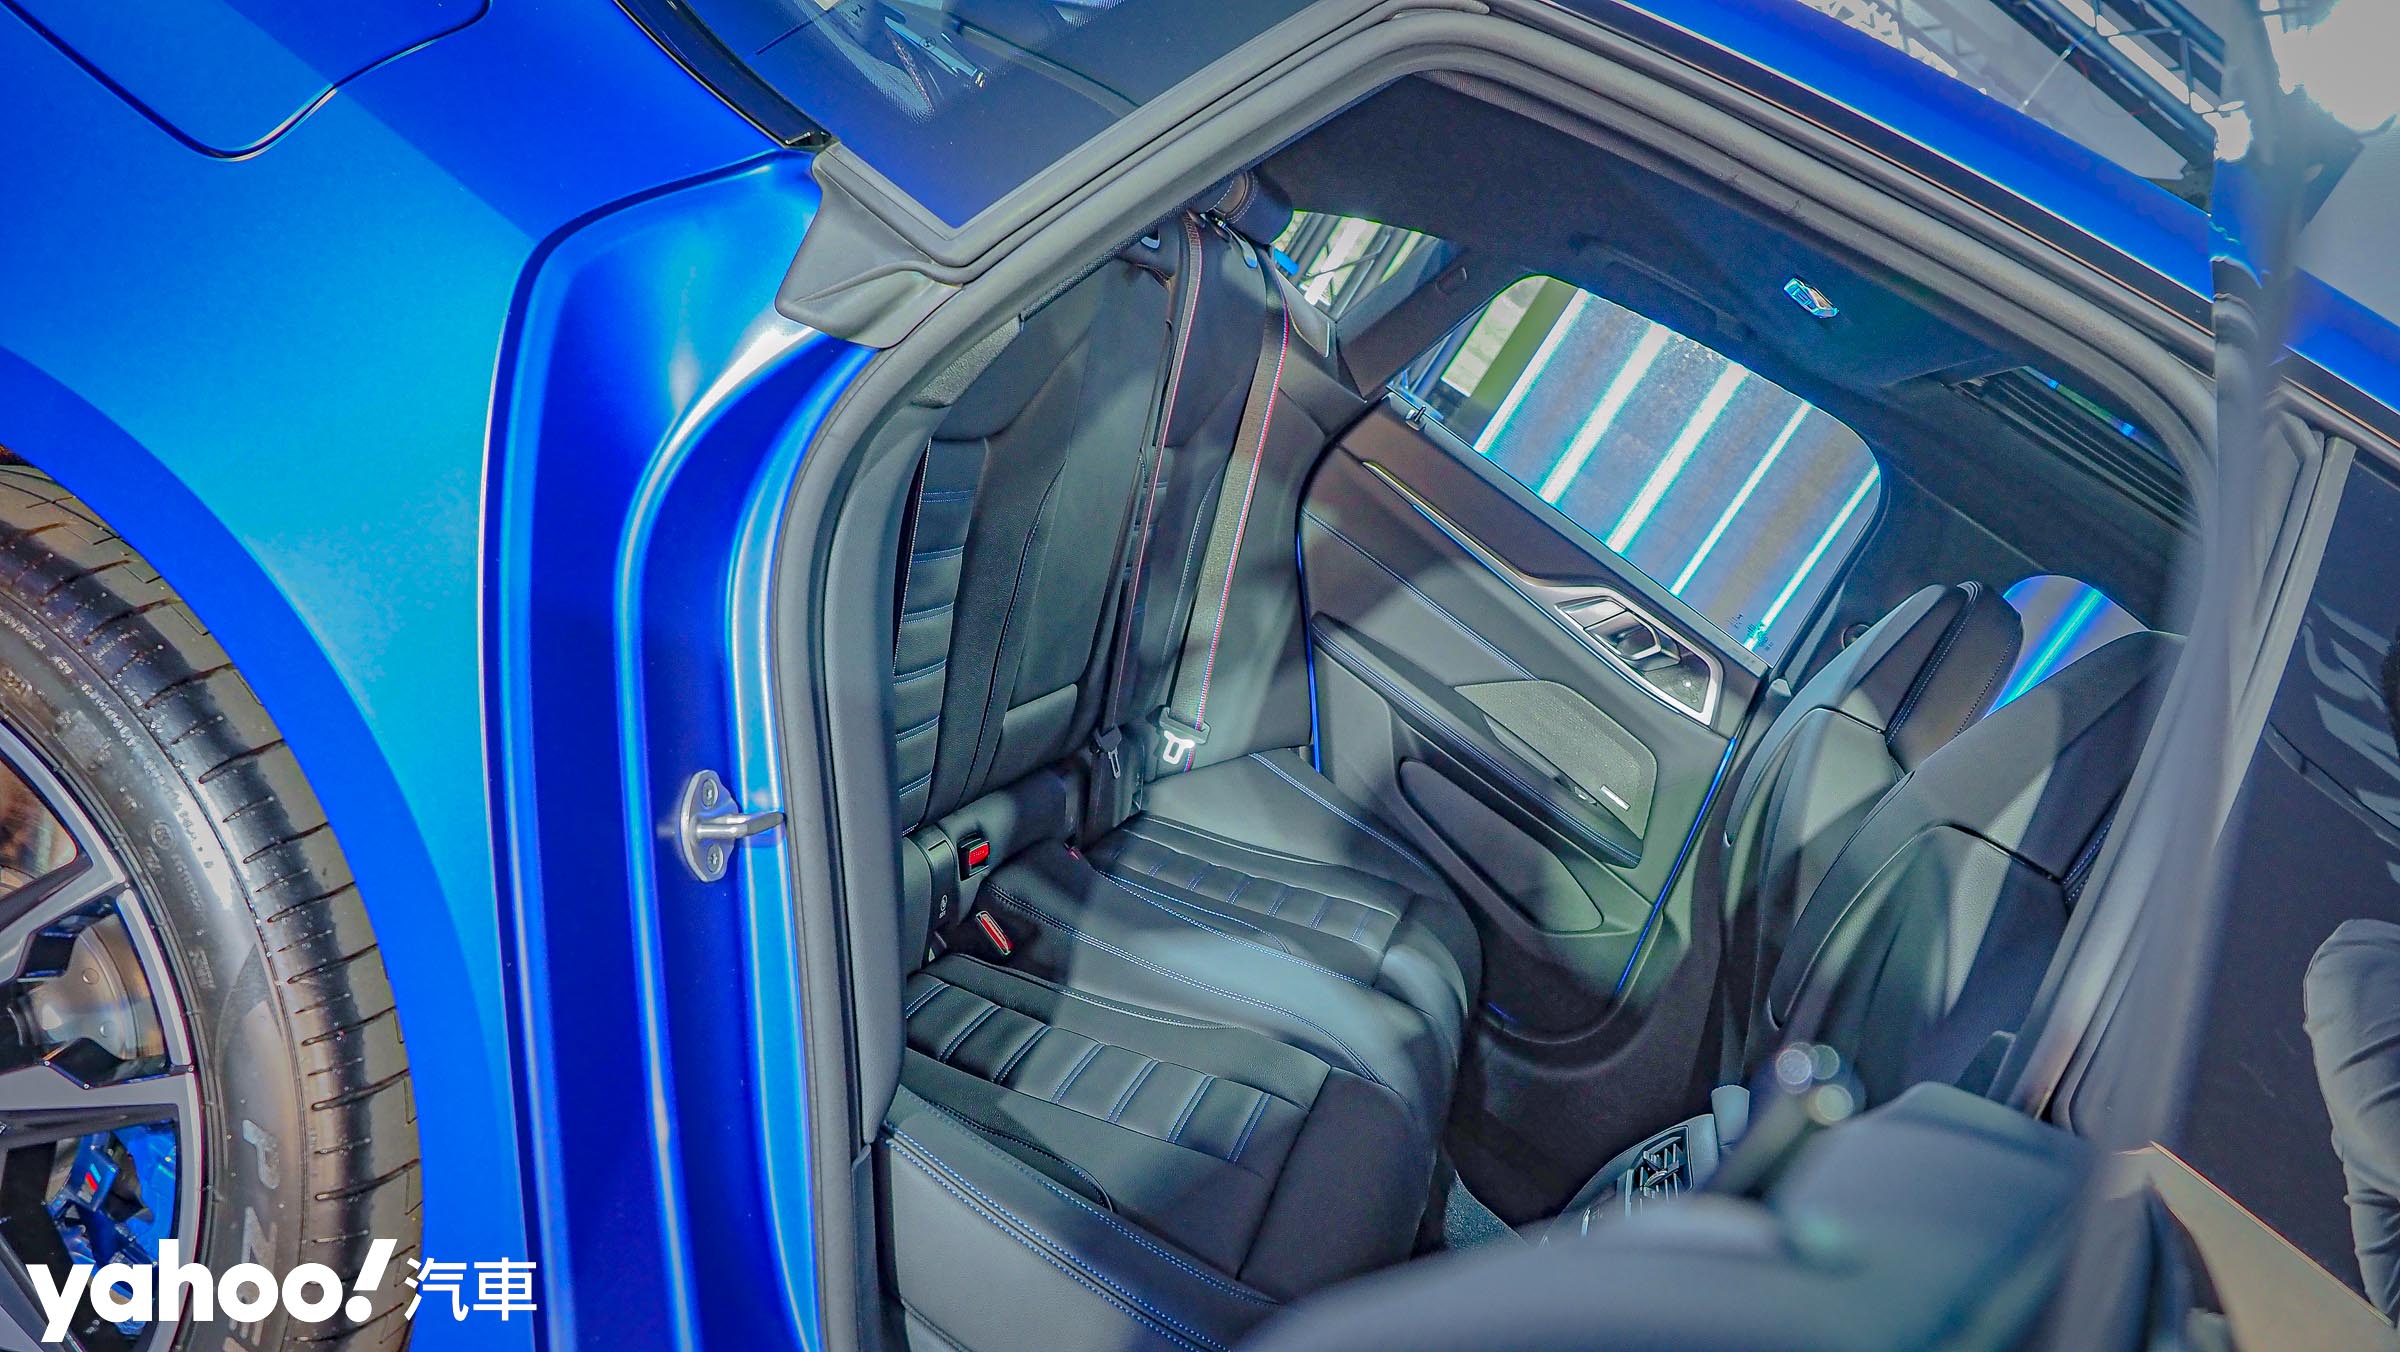 在M50車型上諸如M款三原色安全帶、更具跑格化的縫線點綴，都是i4車系不會忘卻的BMW元素。